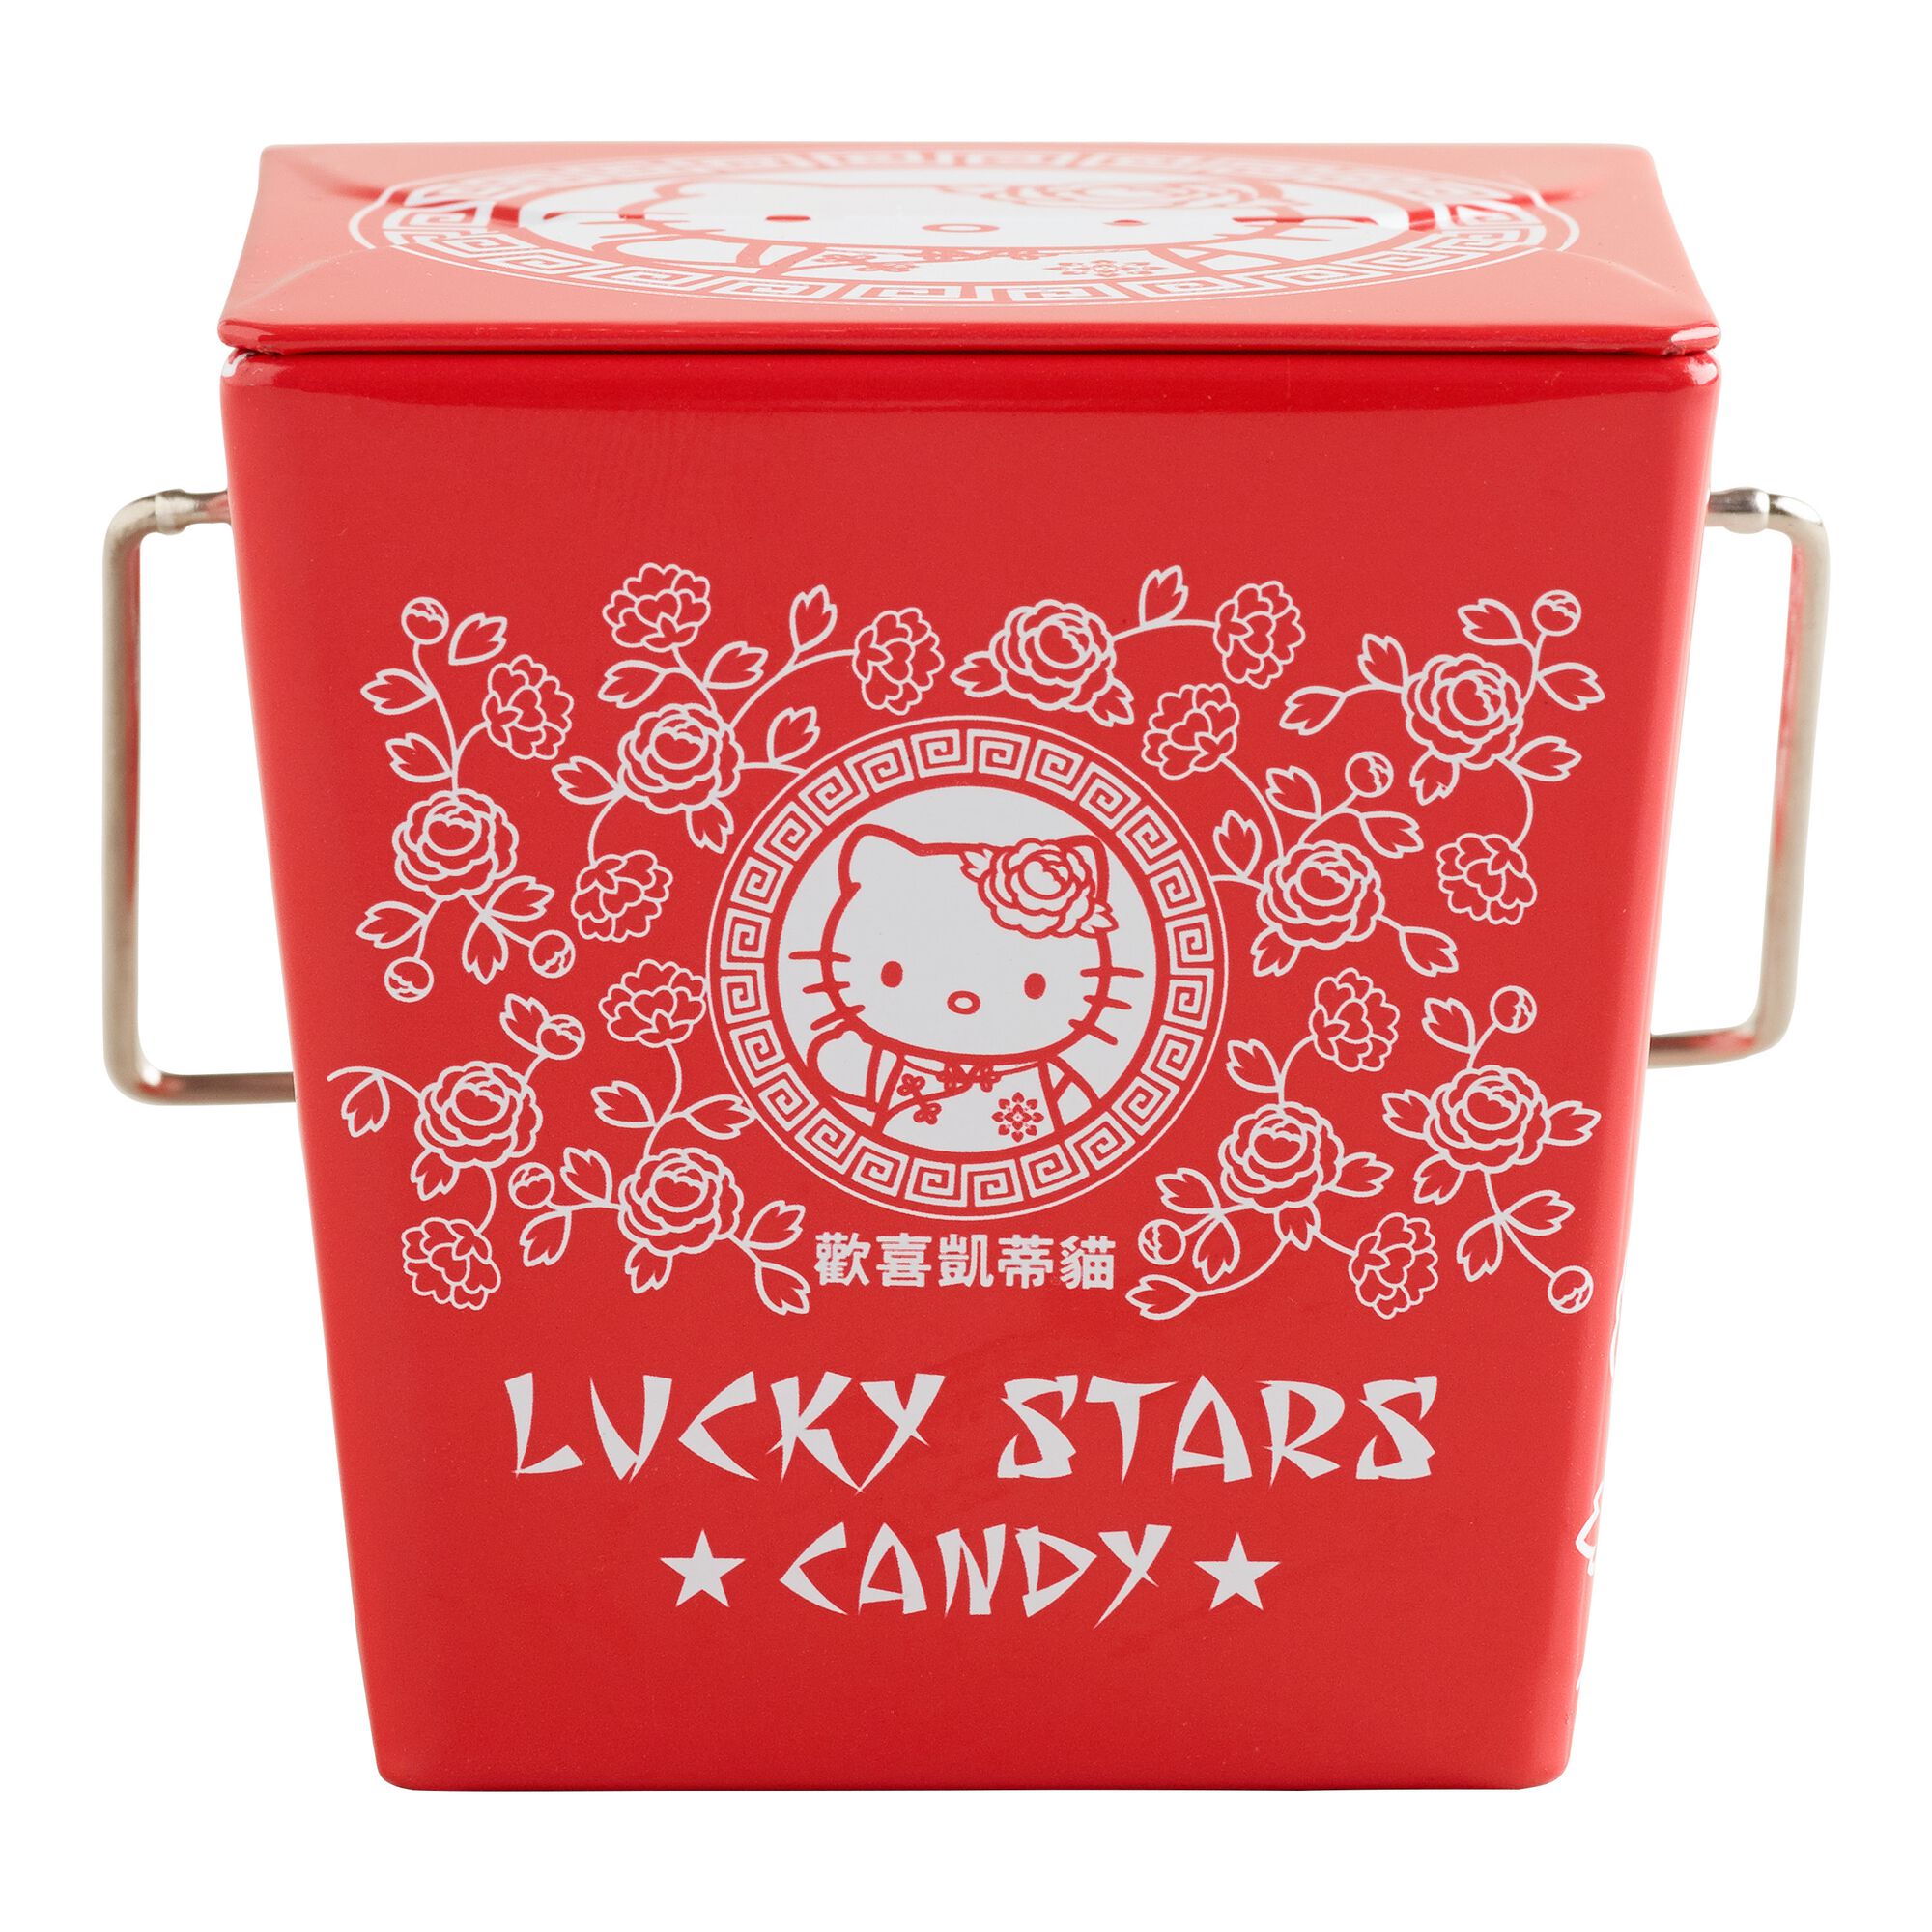 Hello Kitty Lucky Stars Candy Tin - World Market